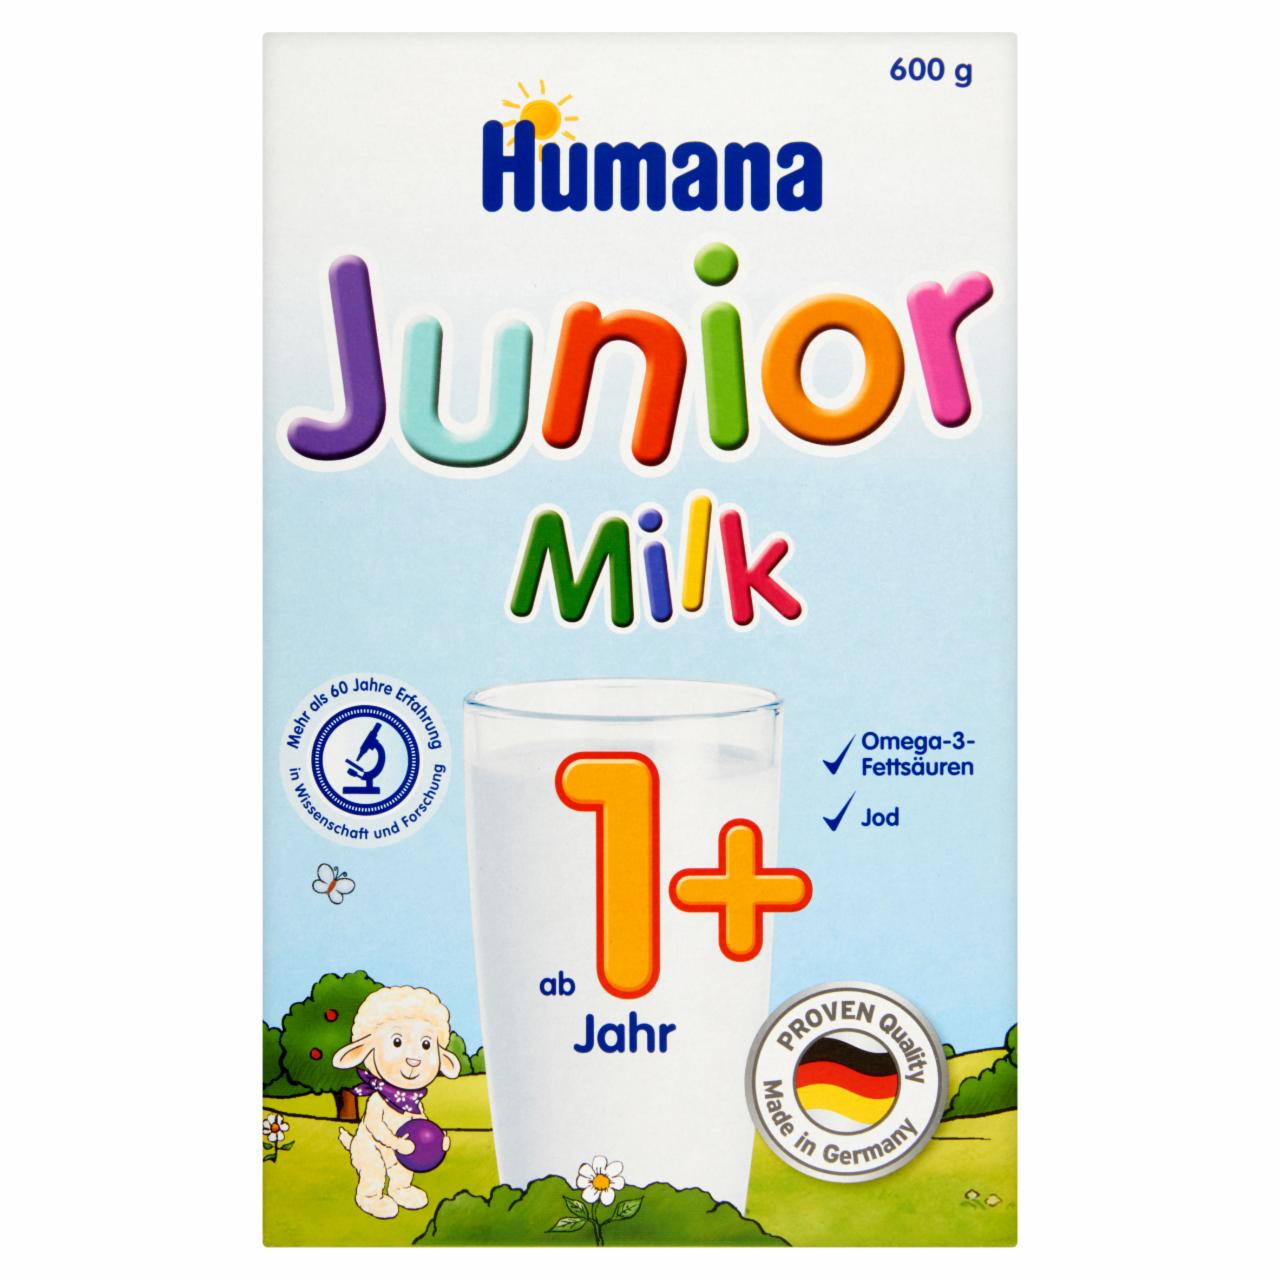 Képek - Humana Junior Milk tejalapú, vanília ízű tápszer 12 hónapos kortól 600 g